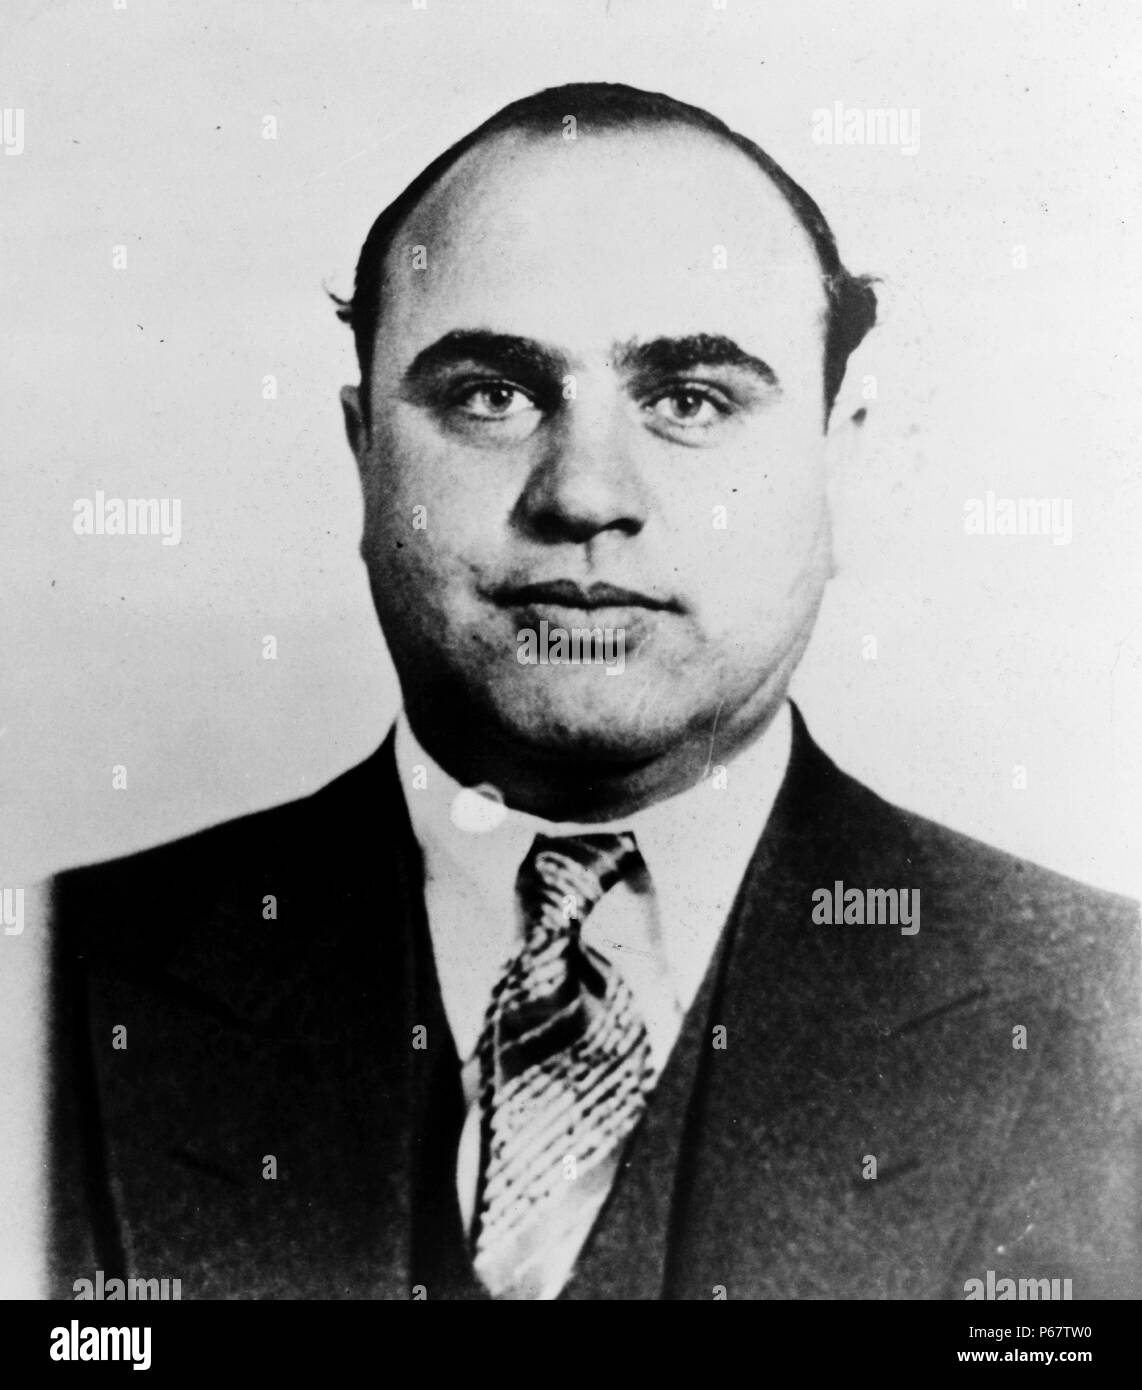 Mugshot von Al Capone. Alphonse Gabriel'Al'Capone war ein amerikanischer Gangster, ein Verbot - ära Verbrechersyndikat geführt. Das Chicago Outfit, die anschließend auch bekannt als der 'Capones', den Schmuggel und bootlegging Likör gewidmet war, und andere illegale Aktivitäten, wie Prostitution, in Chicago aus den frühen 1920er Jahren bis 1931. Stockfoto